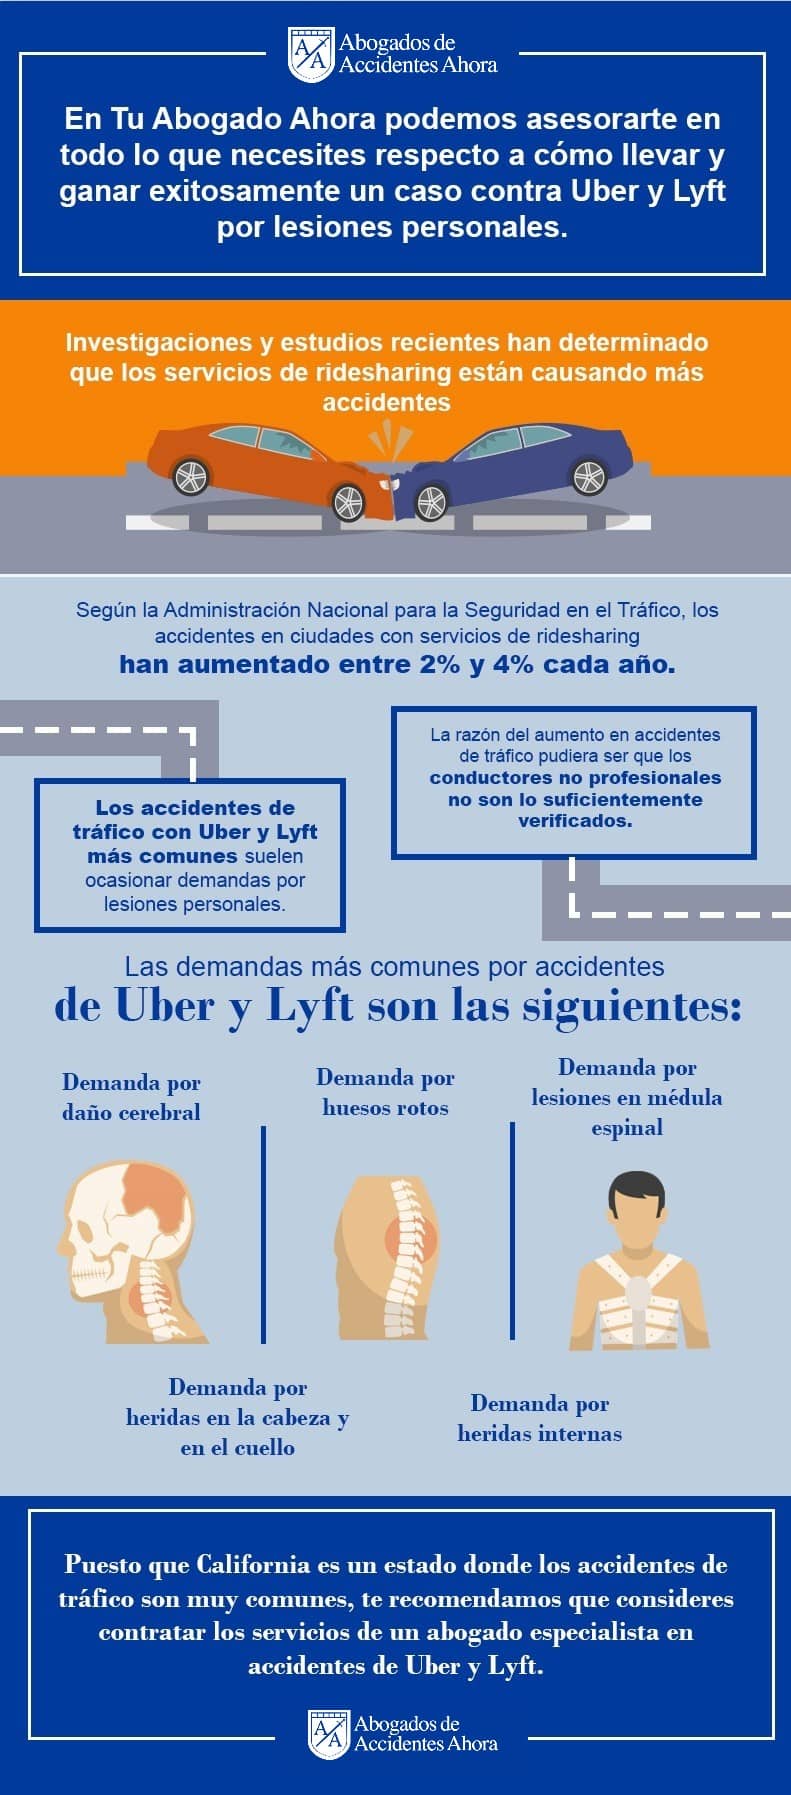 Las demandas más comunes por accidentes de Uber y Lyft, Abogados de Accidentes Ahora